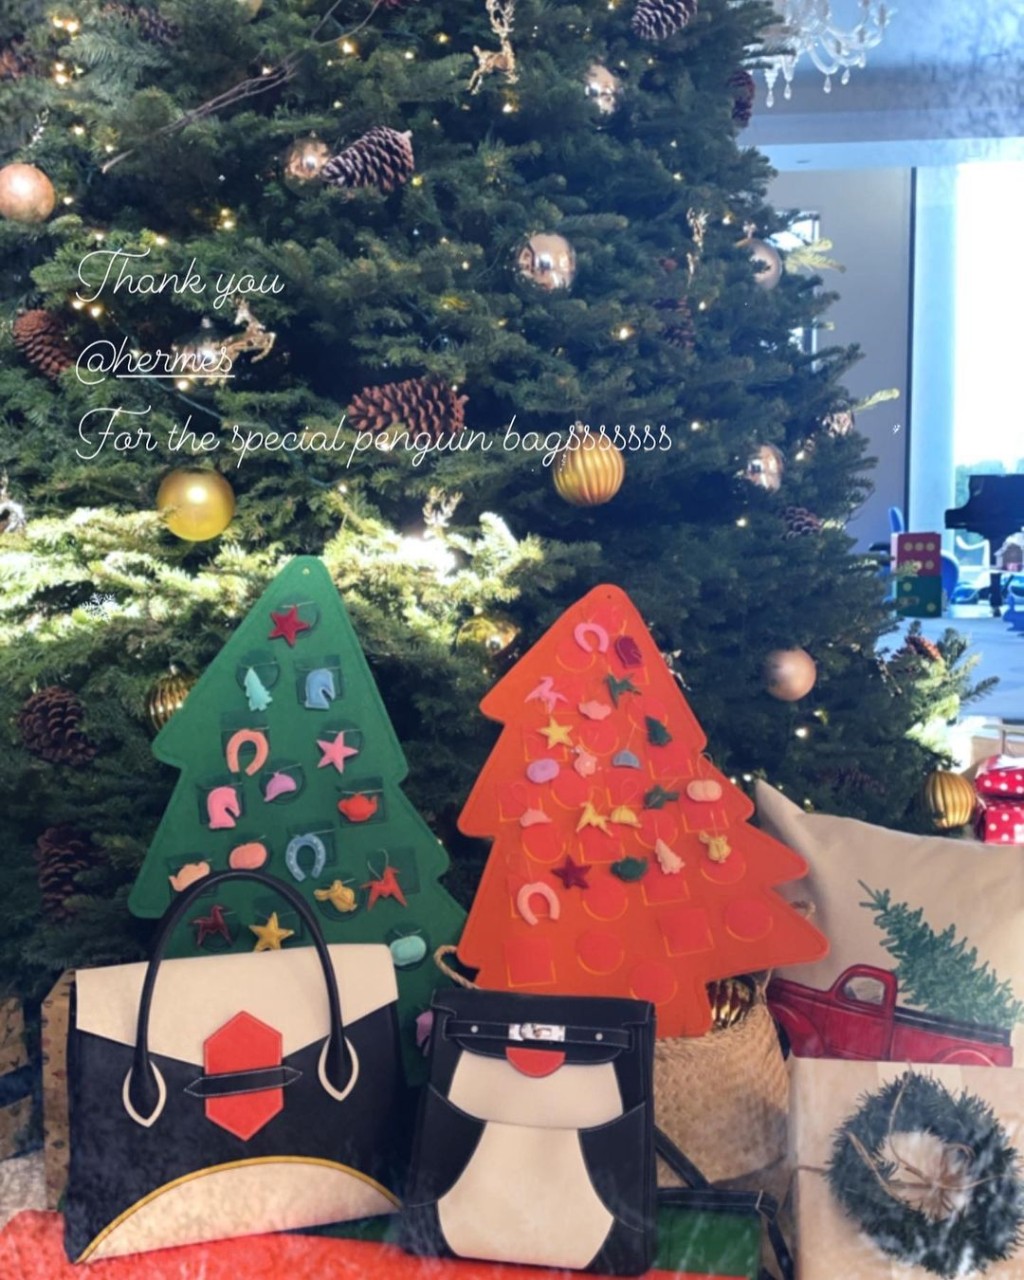 去年聖誕節大劉曾送甘比在Hermès訂製的兩款企鵝袋。